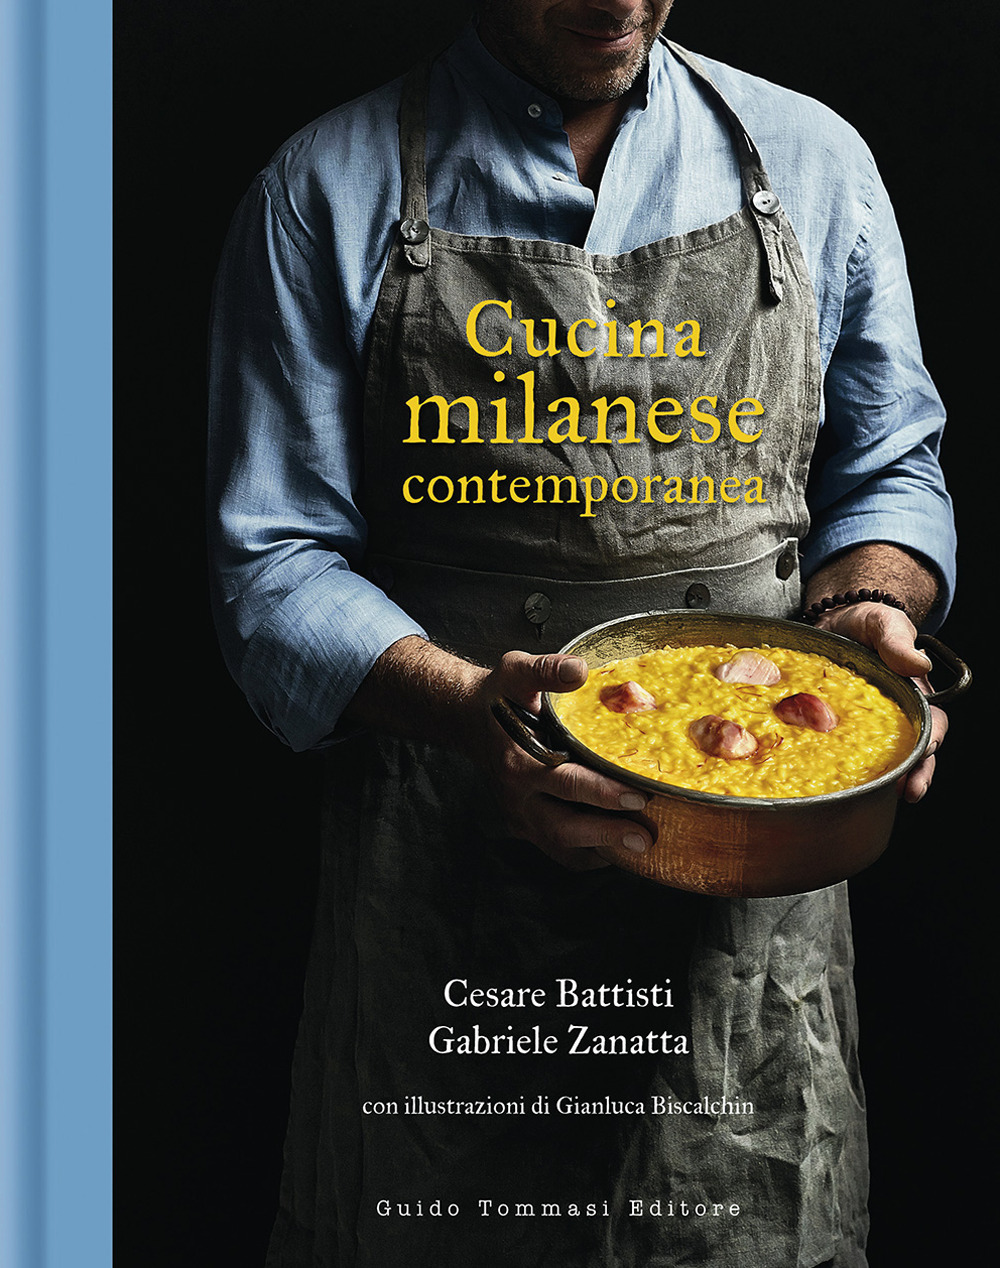 Libri Cesare Battisti / Gabriele Zanatta - Cucina Milanese Contemporanea NUOVO SIGILLATO, EDIZIONE DEL 15/10/2020 SUBITO DISPONIBILE